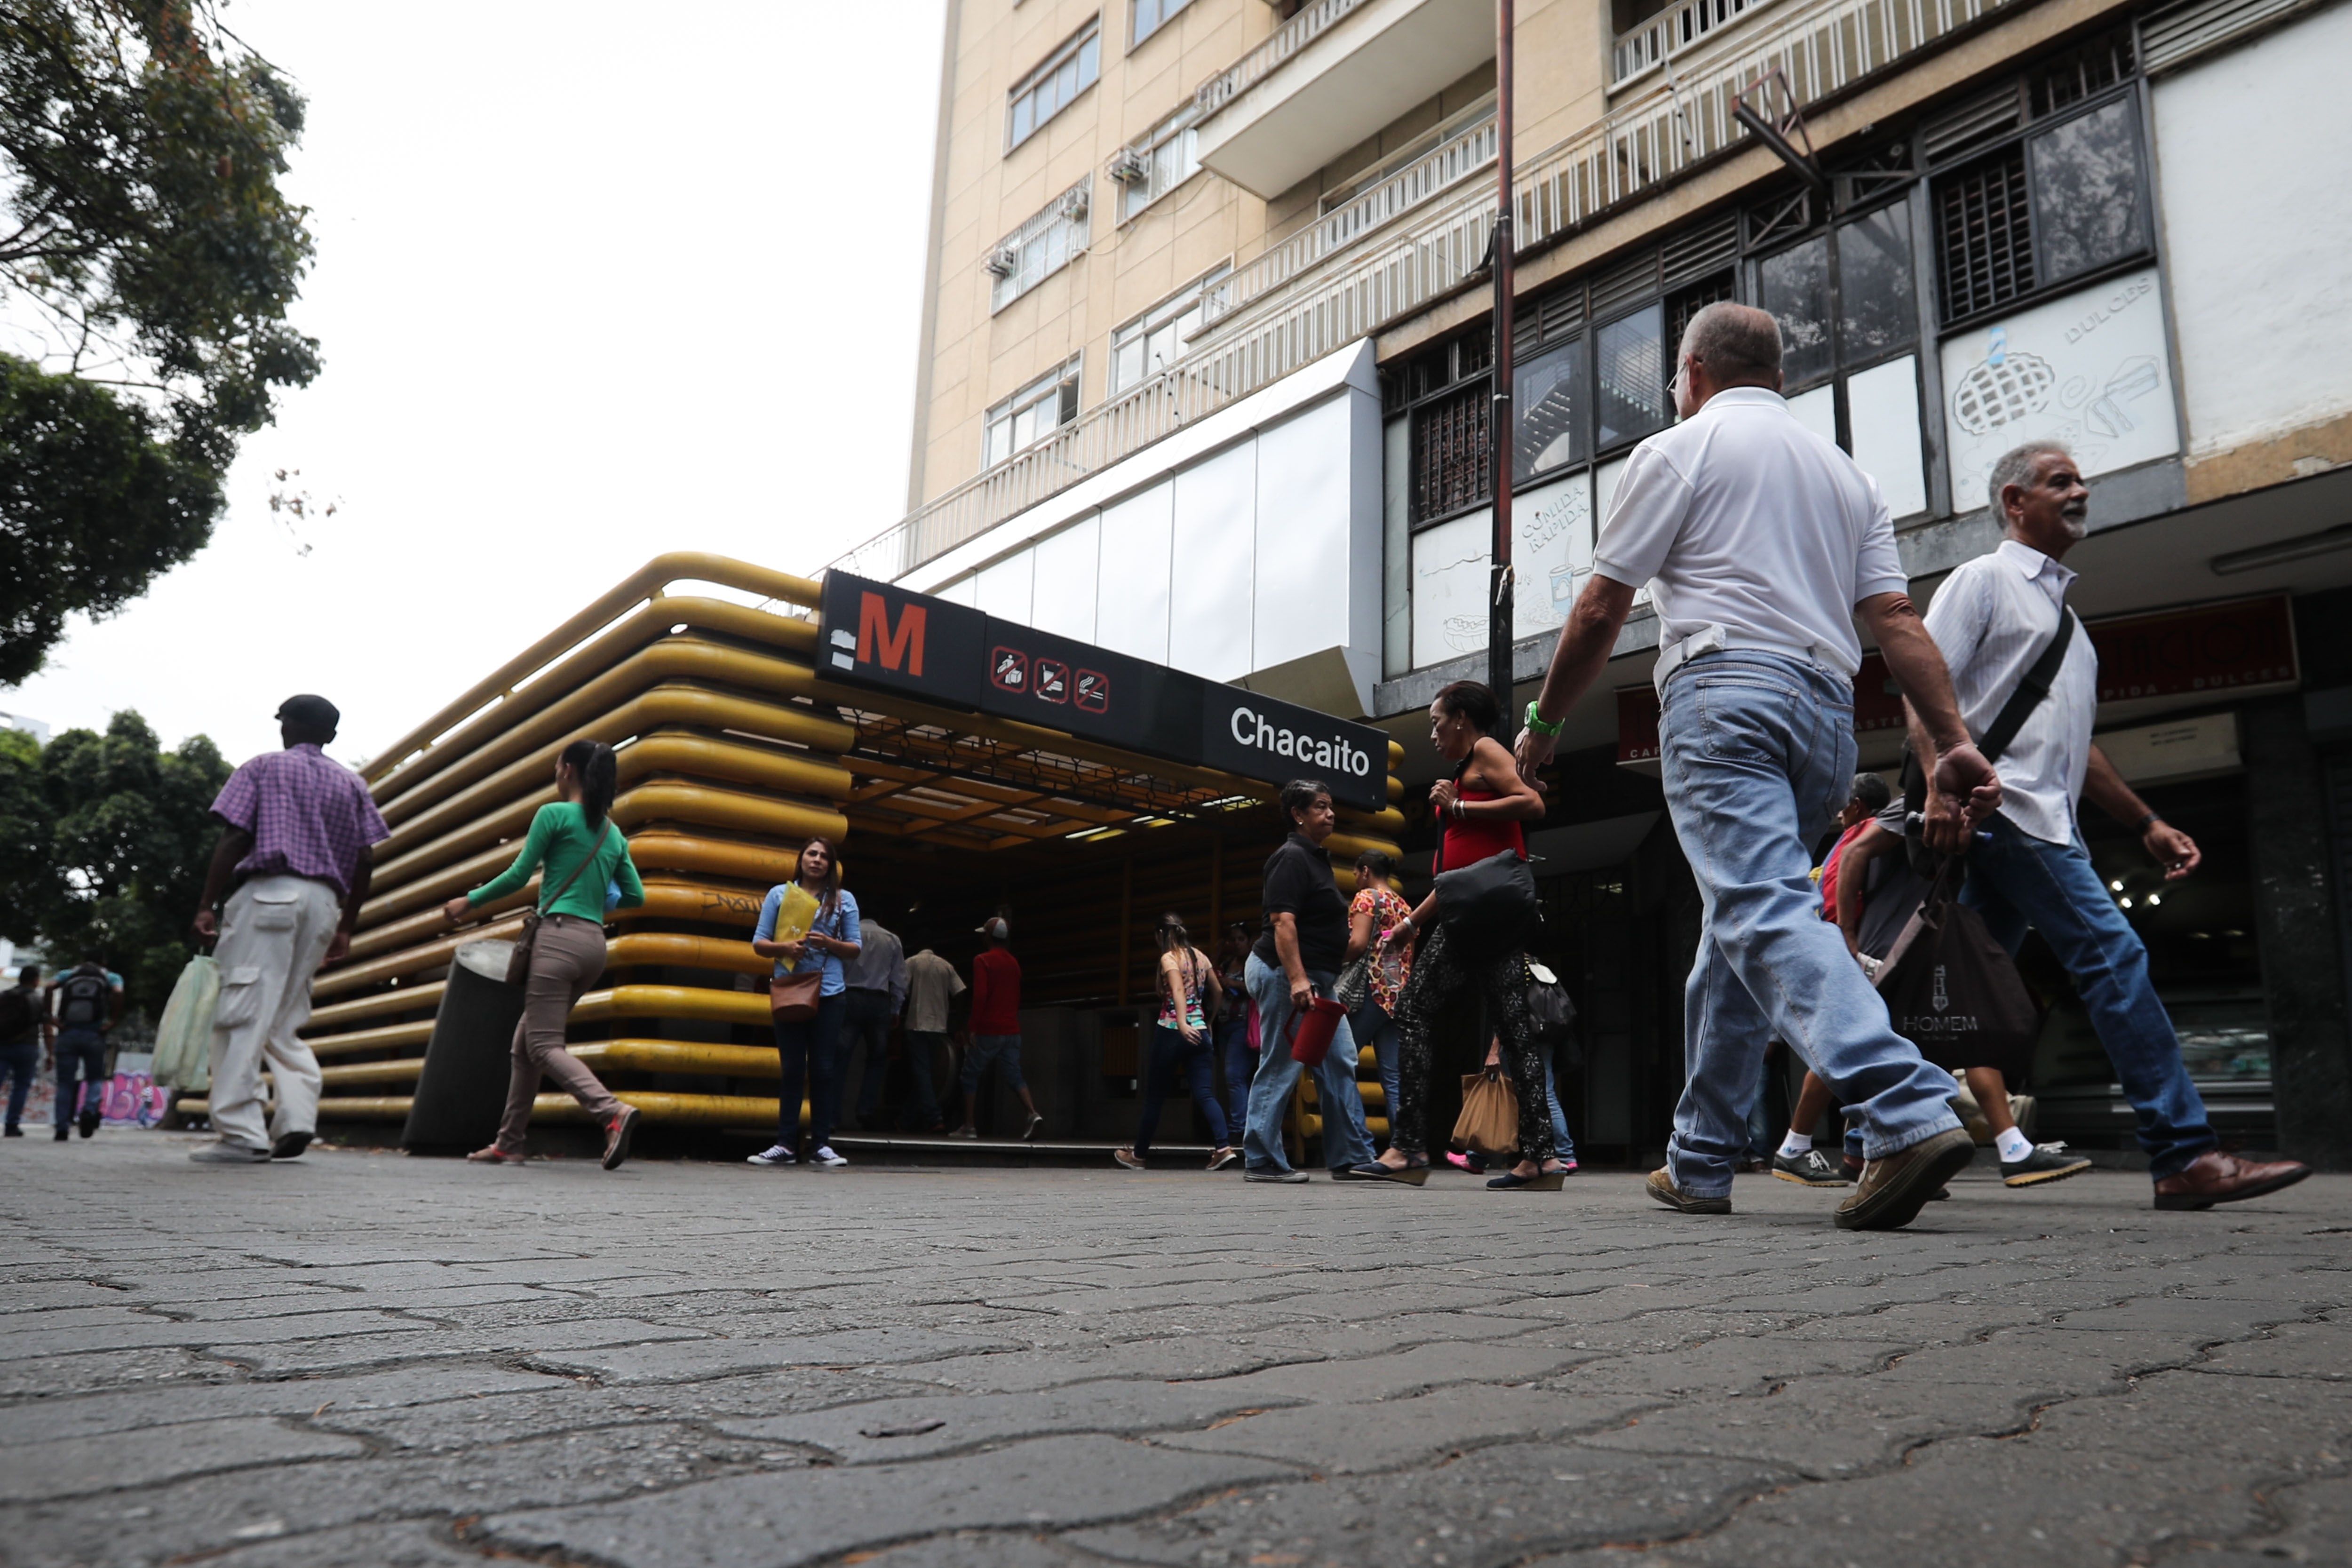 En medio del caos: Metro de Caracas dice que restablecieron servicio comercial tras apagón #10Abr